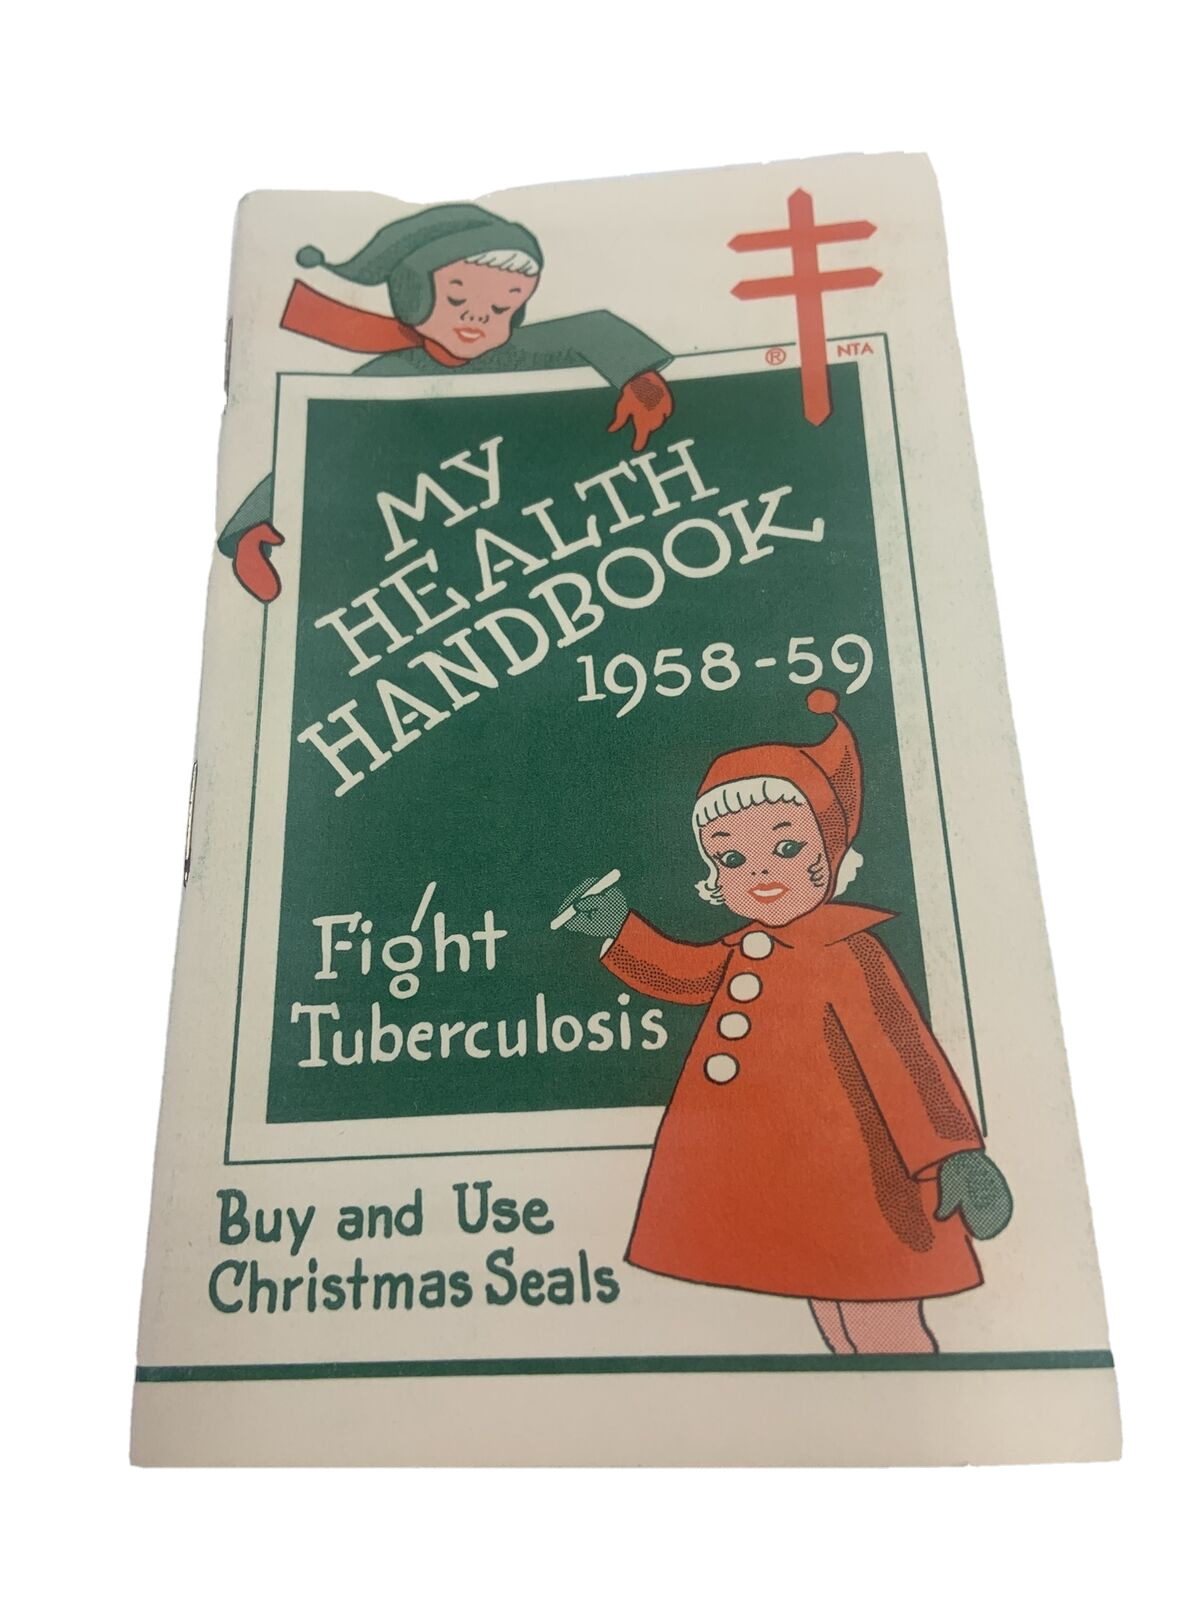 My Health Handbook 1958 Christmas Seals Minnesota Public Health Unused Vintage